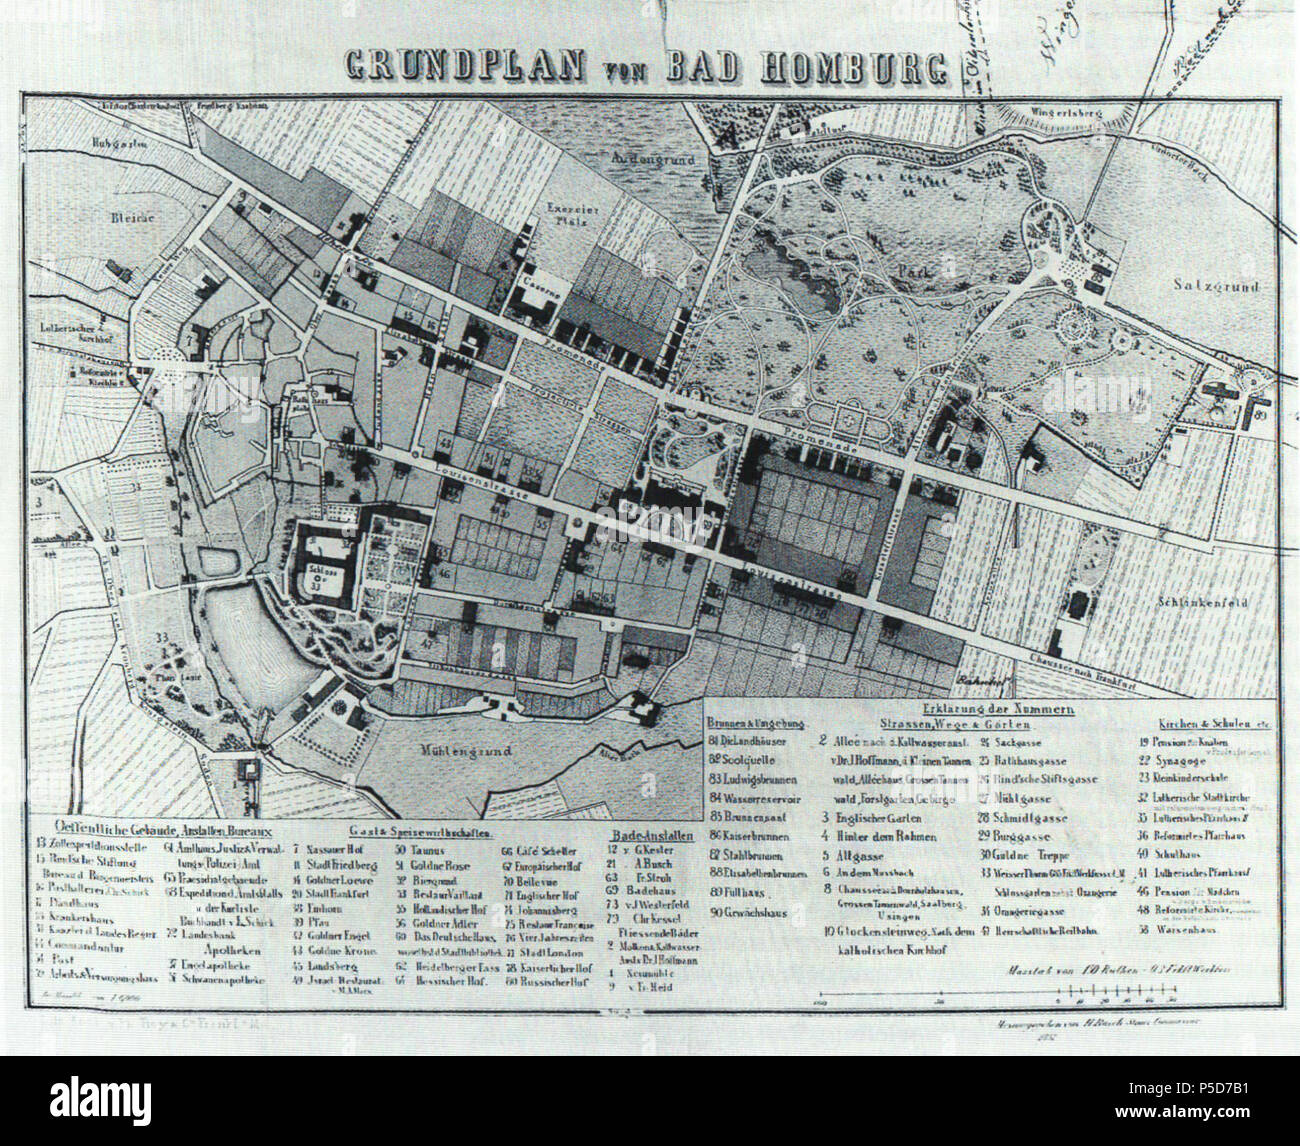 N/A. Deutsch: Bad Homburg, Stadtplan von 1857 . 1 June 2012. H. Busch, Steuer-Commionaire 161 Bad Homburg, Stadtplan von 1857 Stock Photo